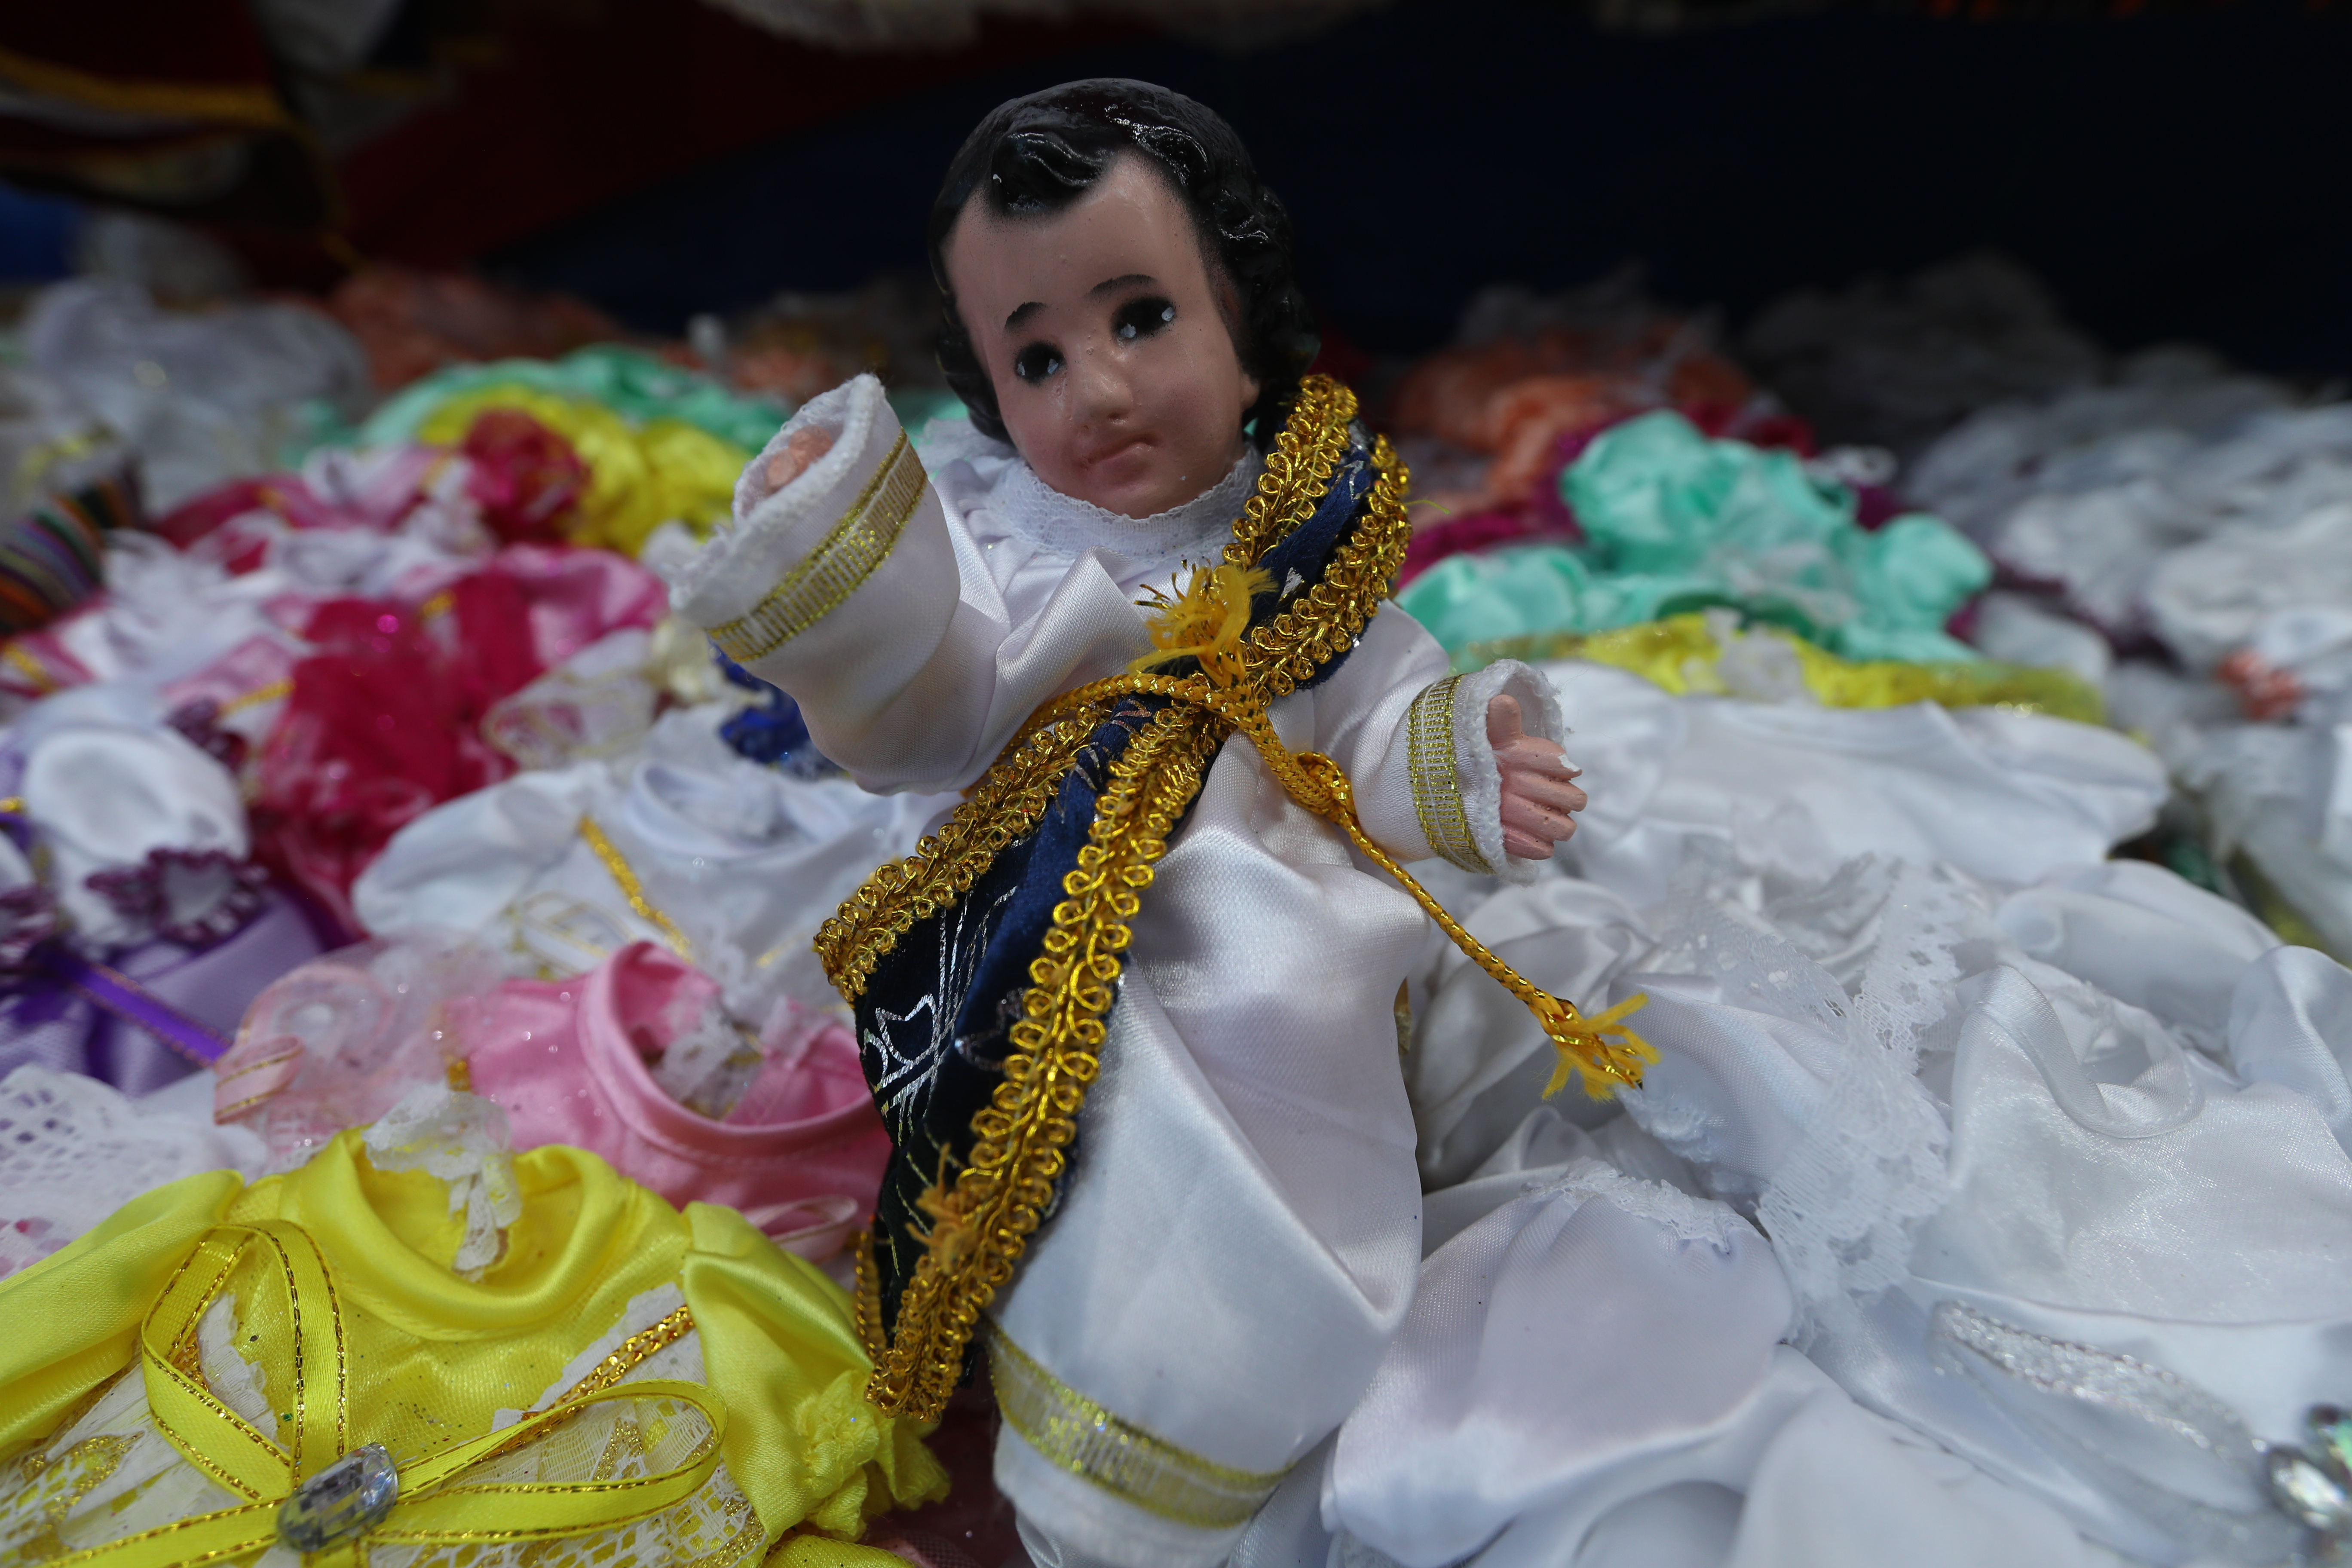 Los vestidos del niño solían ser blancos en el pasado.  Hoy cambian de diseños y colores.   (Foto Prensa Libre: Esbin García)




